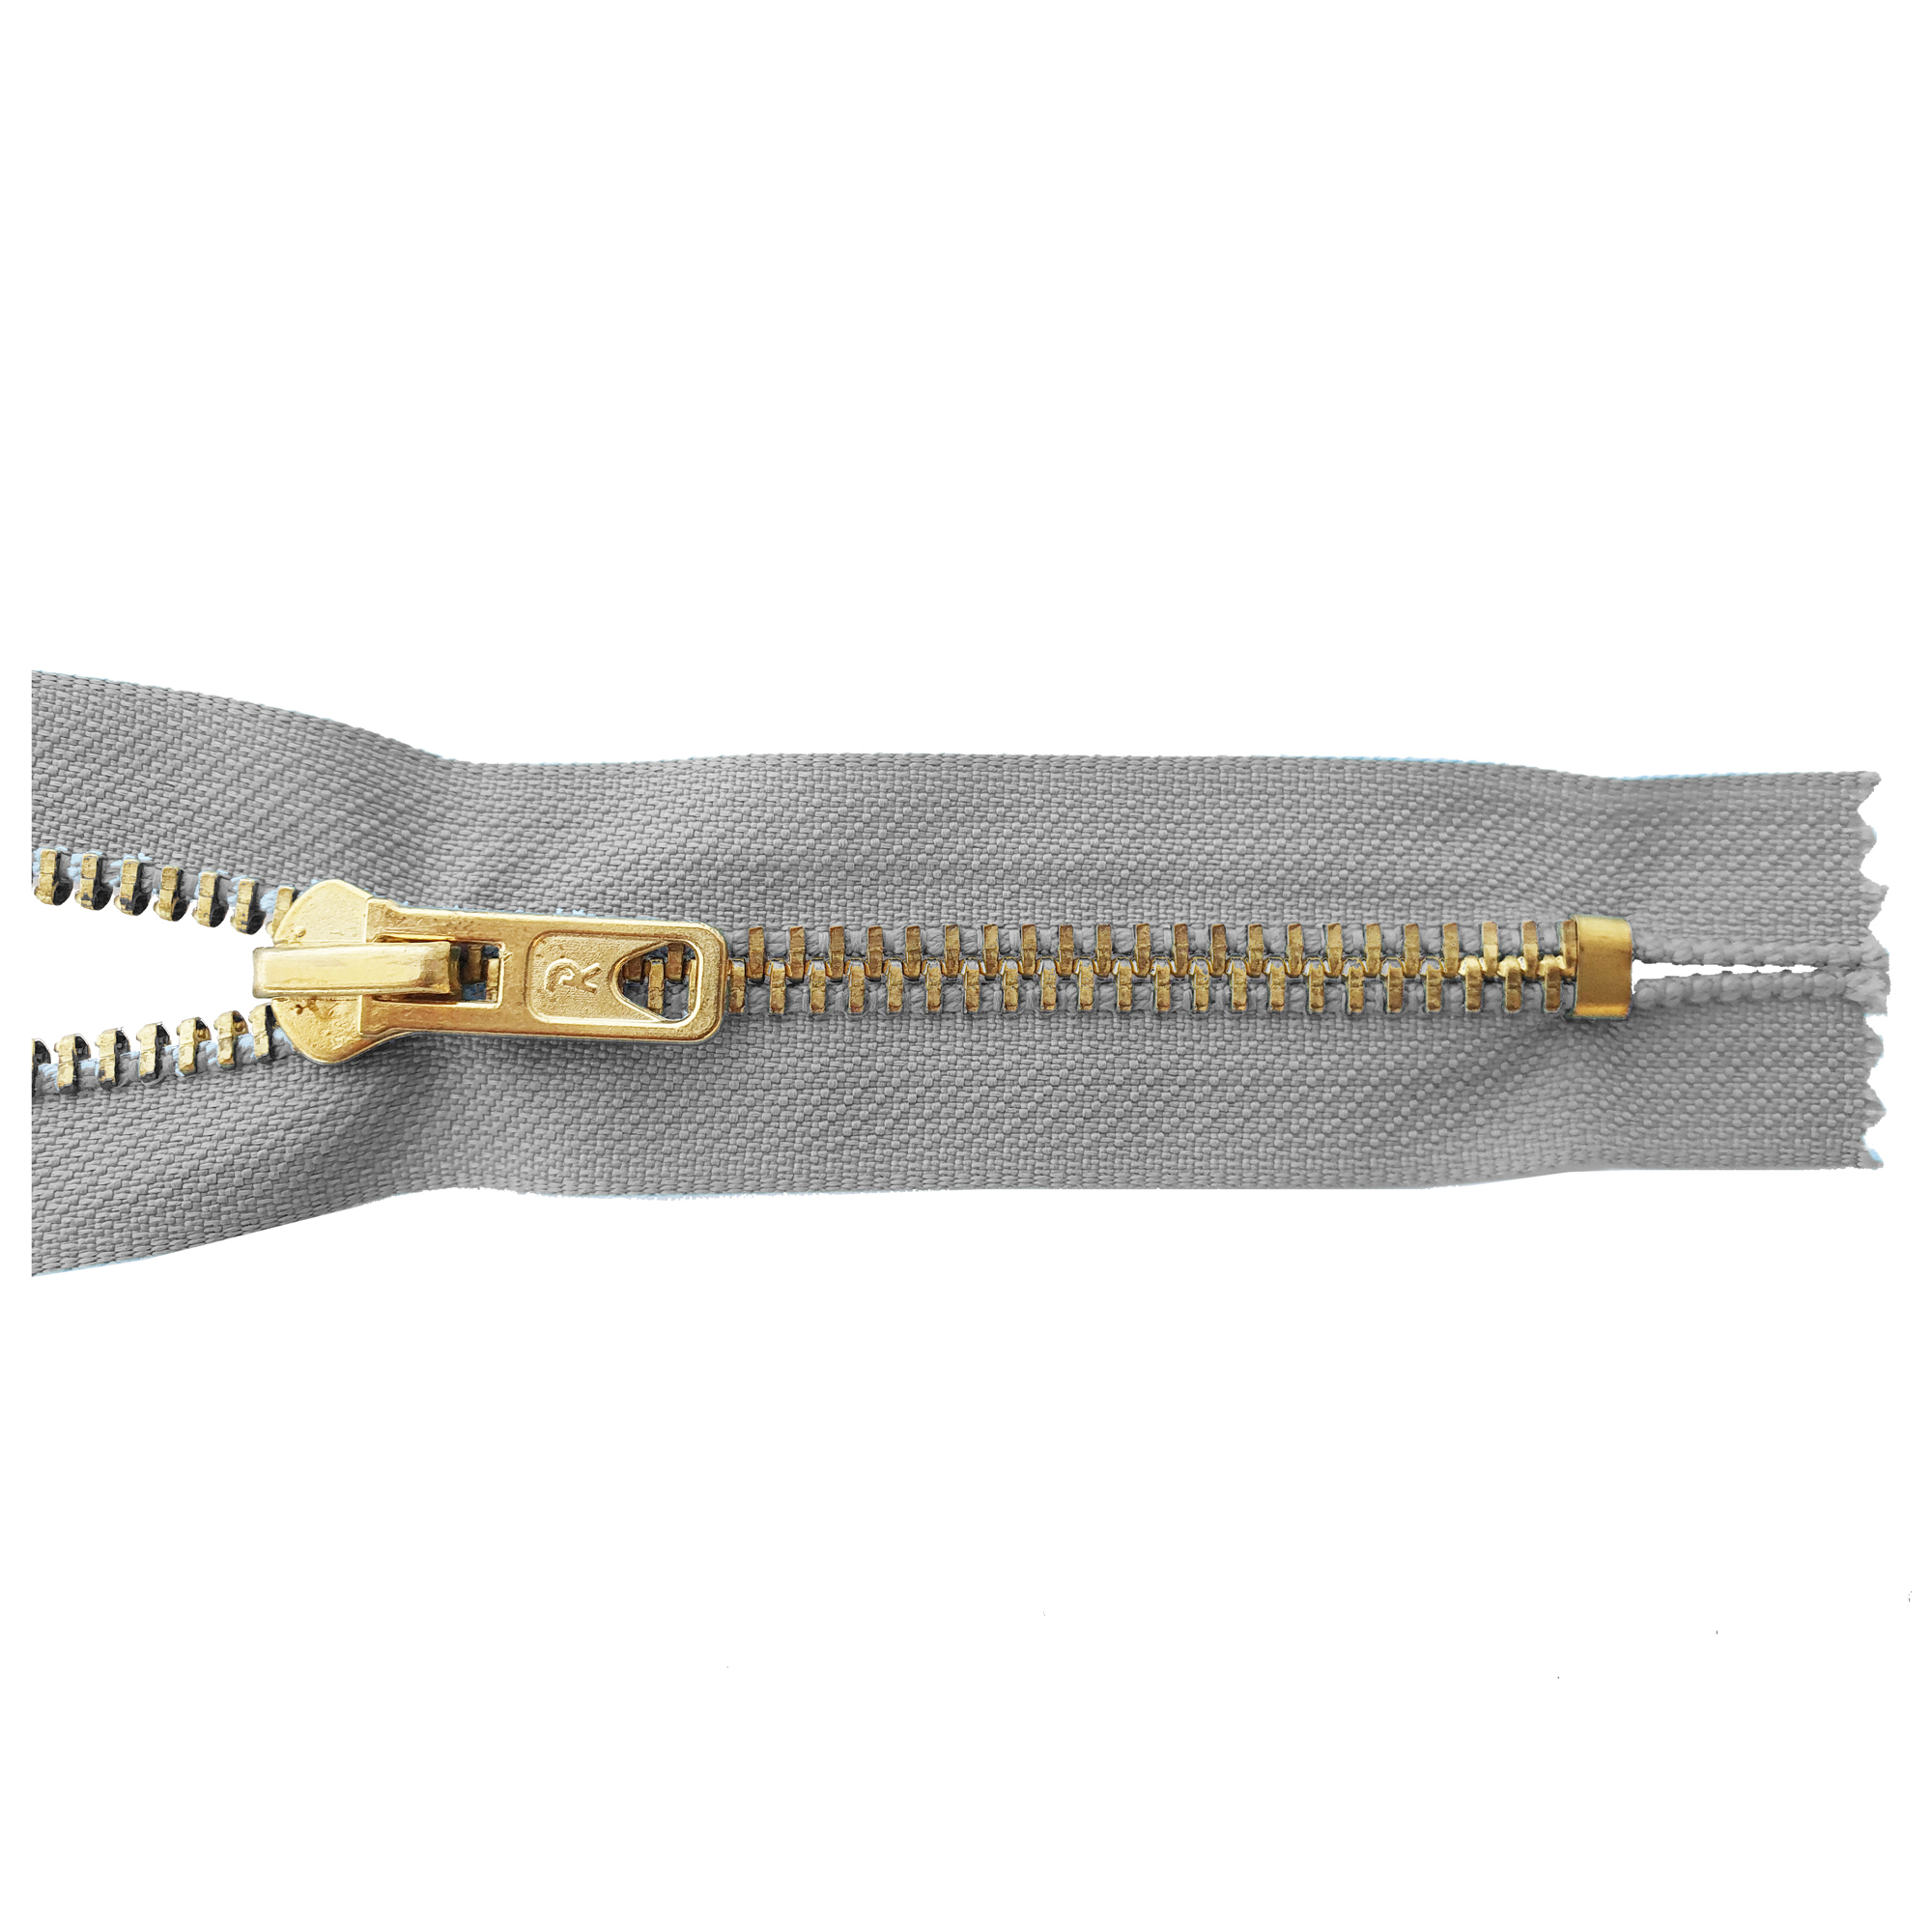 Reißverschluss, nicht teilbar, Metall goldf. breit, hellgrau, hochwertiger Marken-Reißverschluss von Rubi/Barcelona